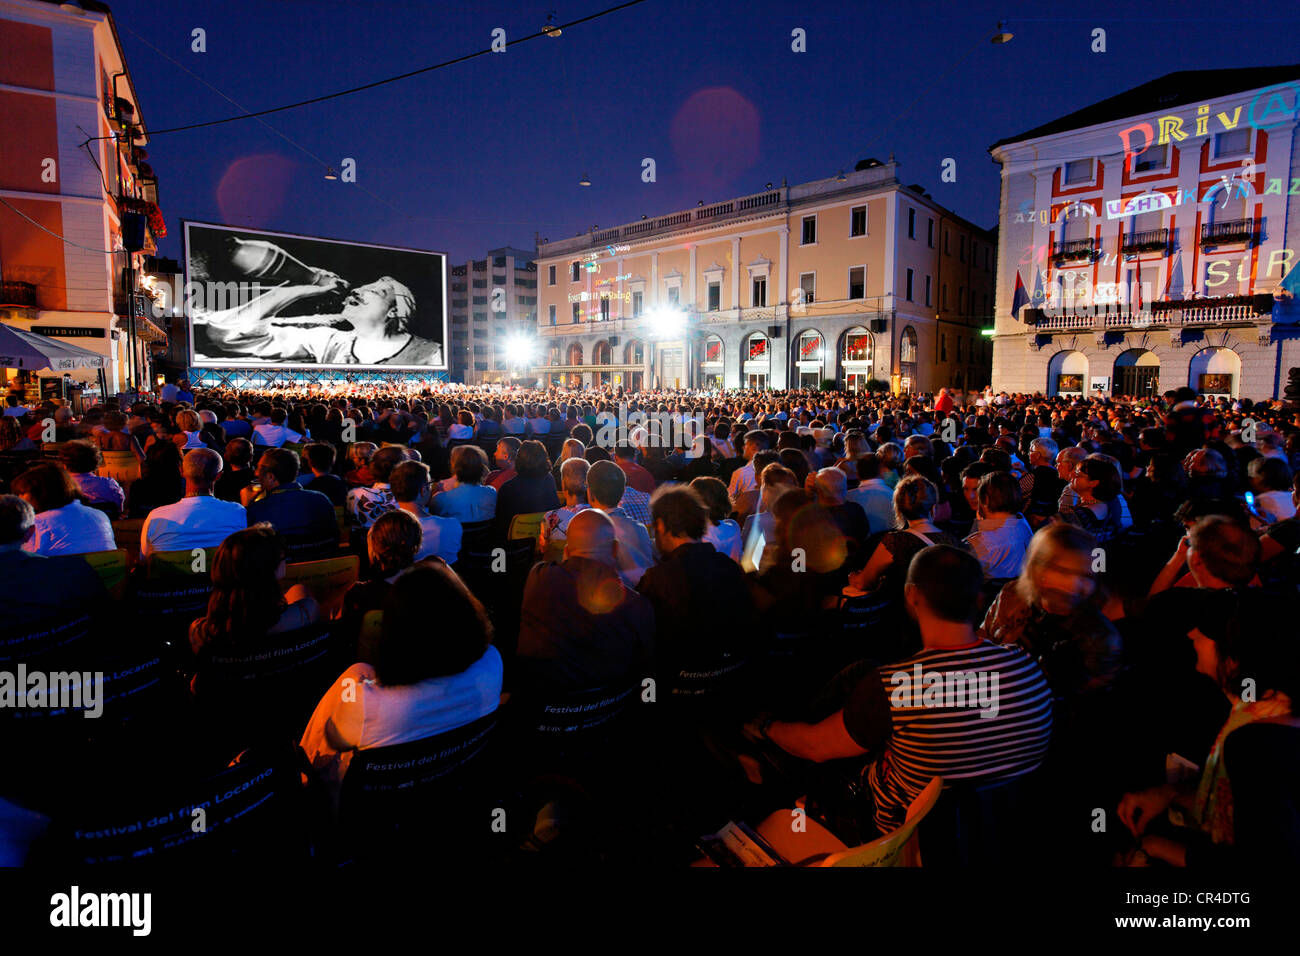 Locarno International Film Festival, annual event, in the Piazza Grande, Locarno, canton of Ticino, Switzerland, Europe Stock Photo